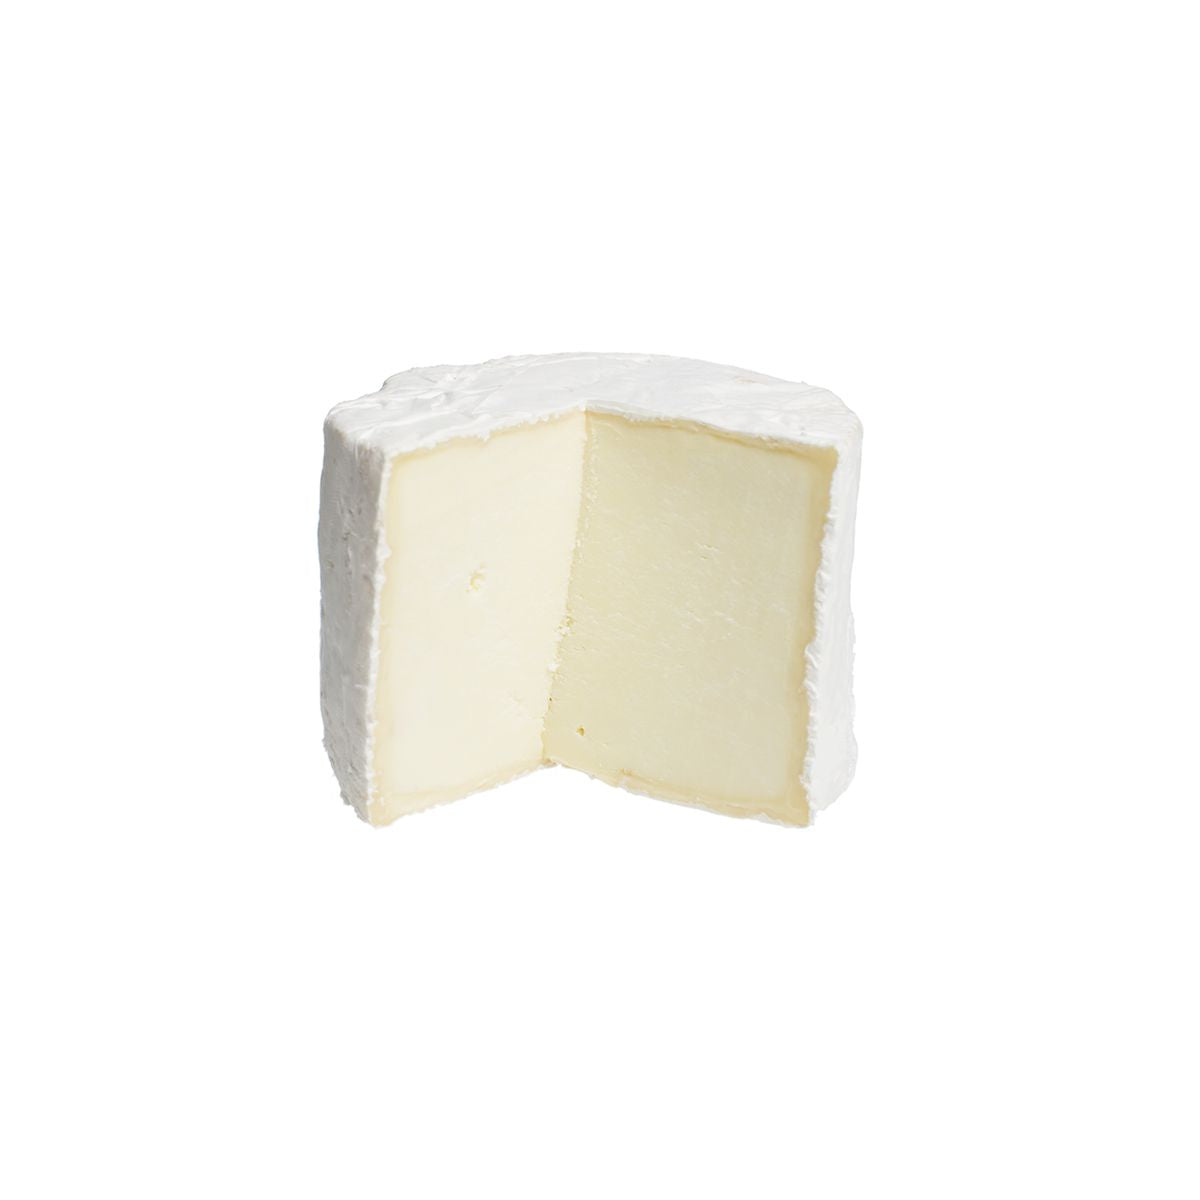 Nettle Meadow Farm Kunik Buttons Cheese